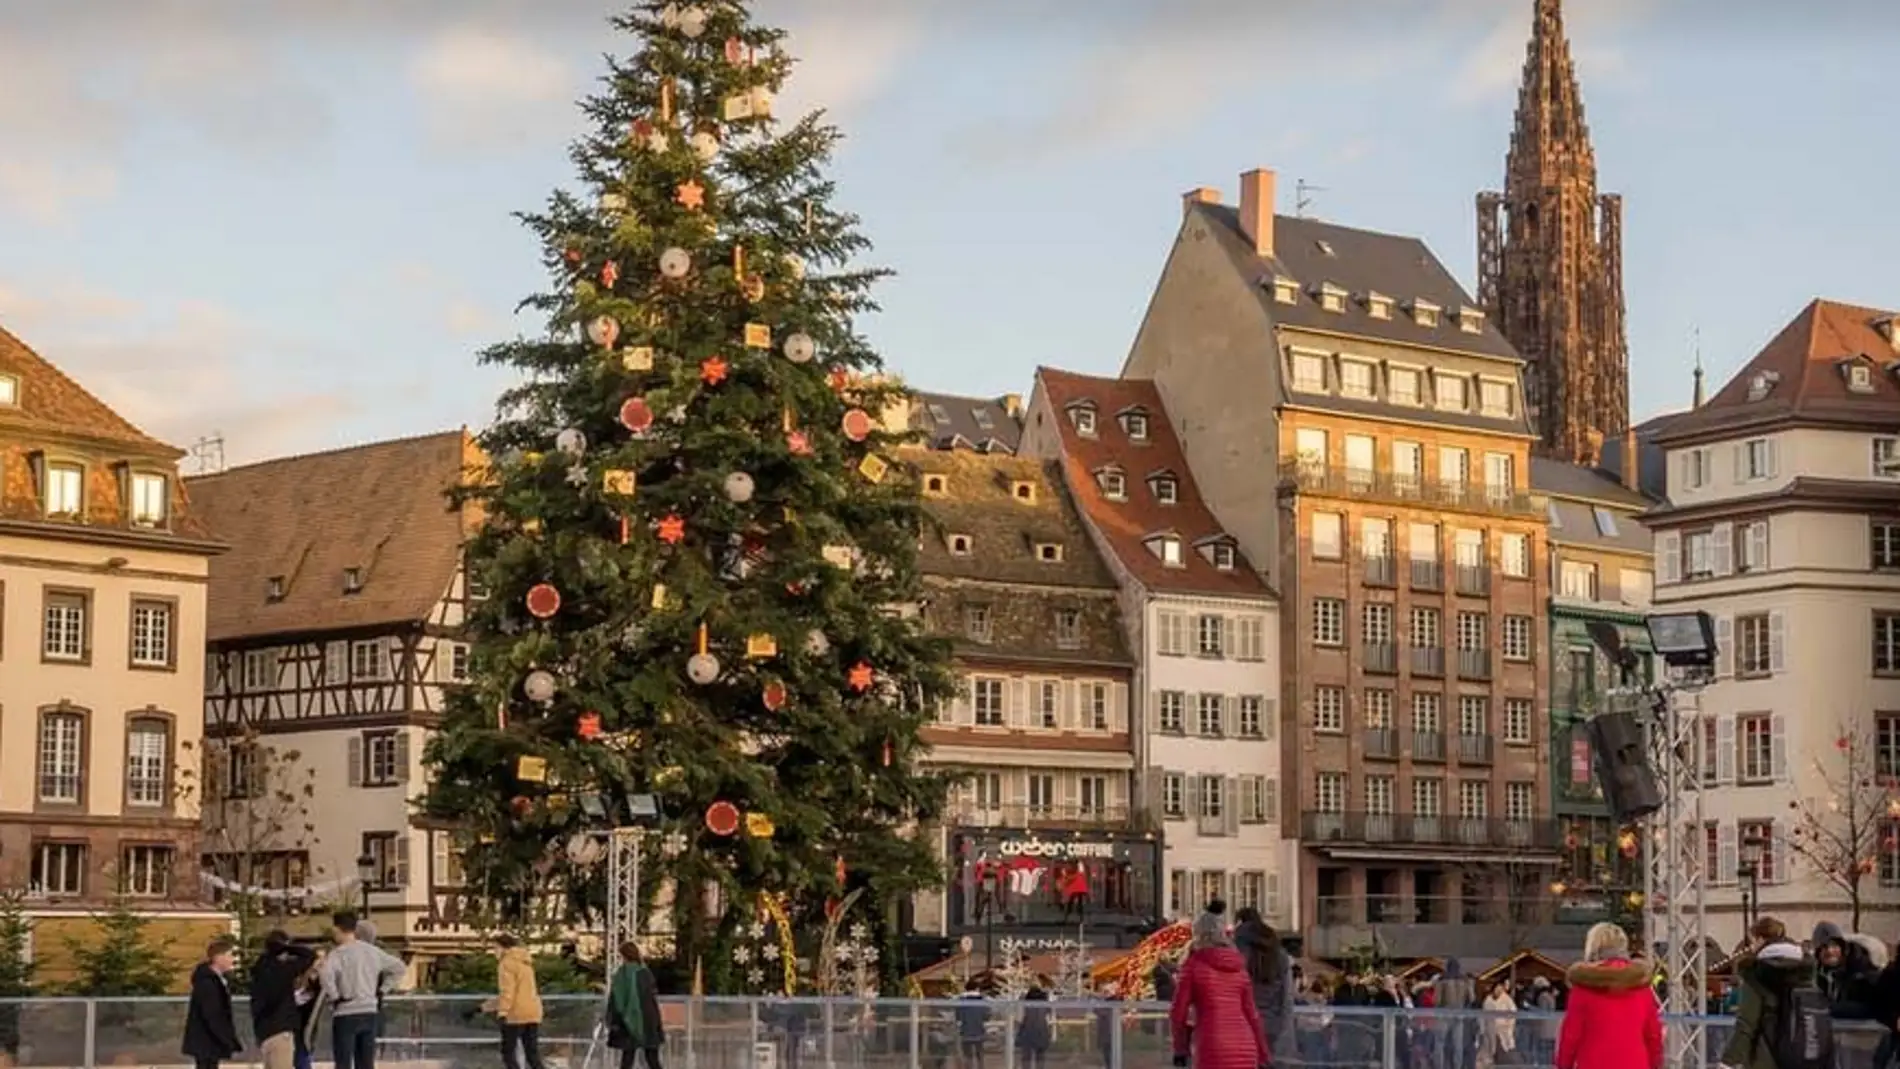 Estrasburgo, capital de la Navidad y destino perfecto para el puente de diciembre